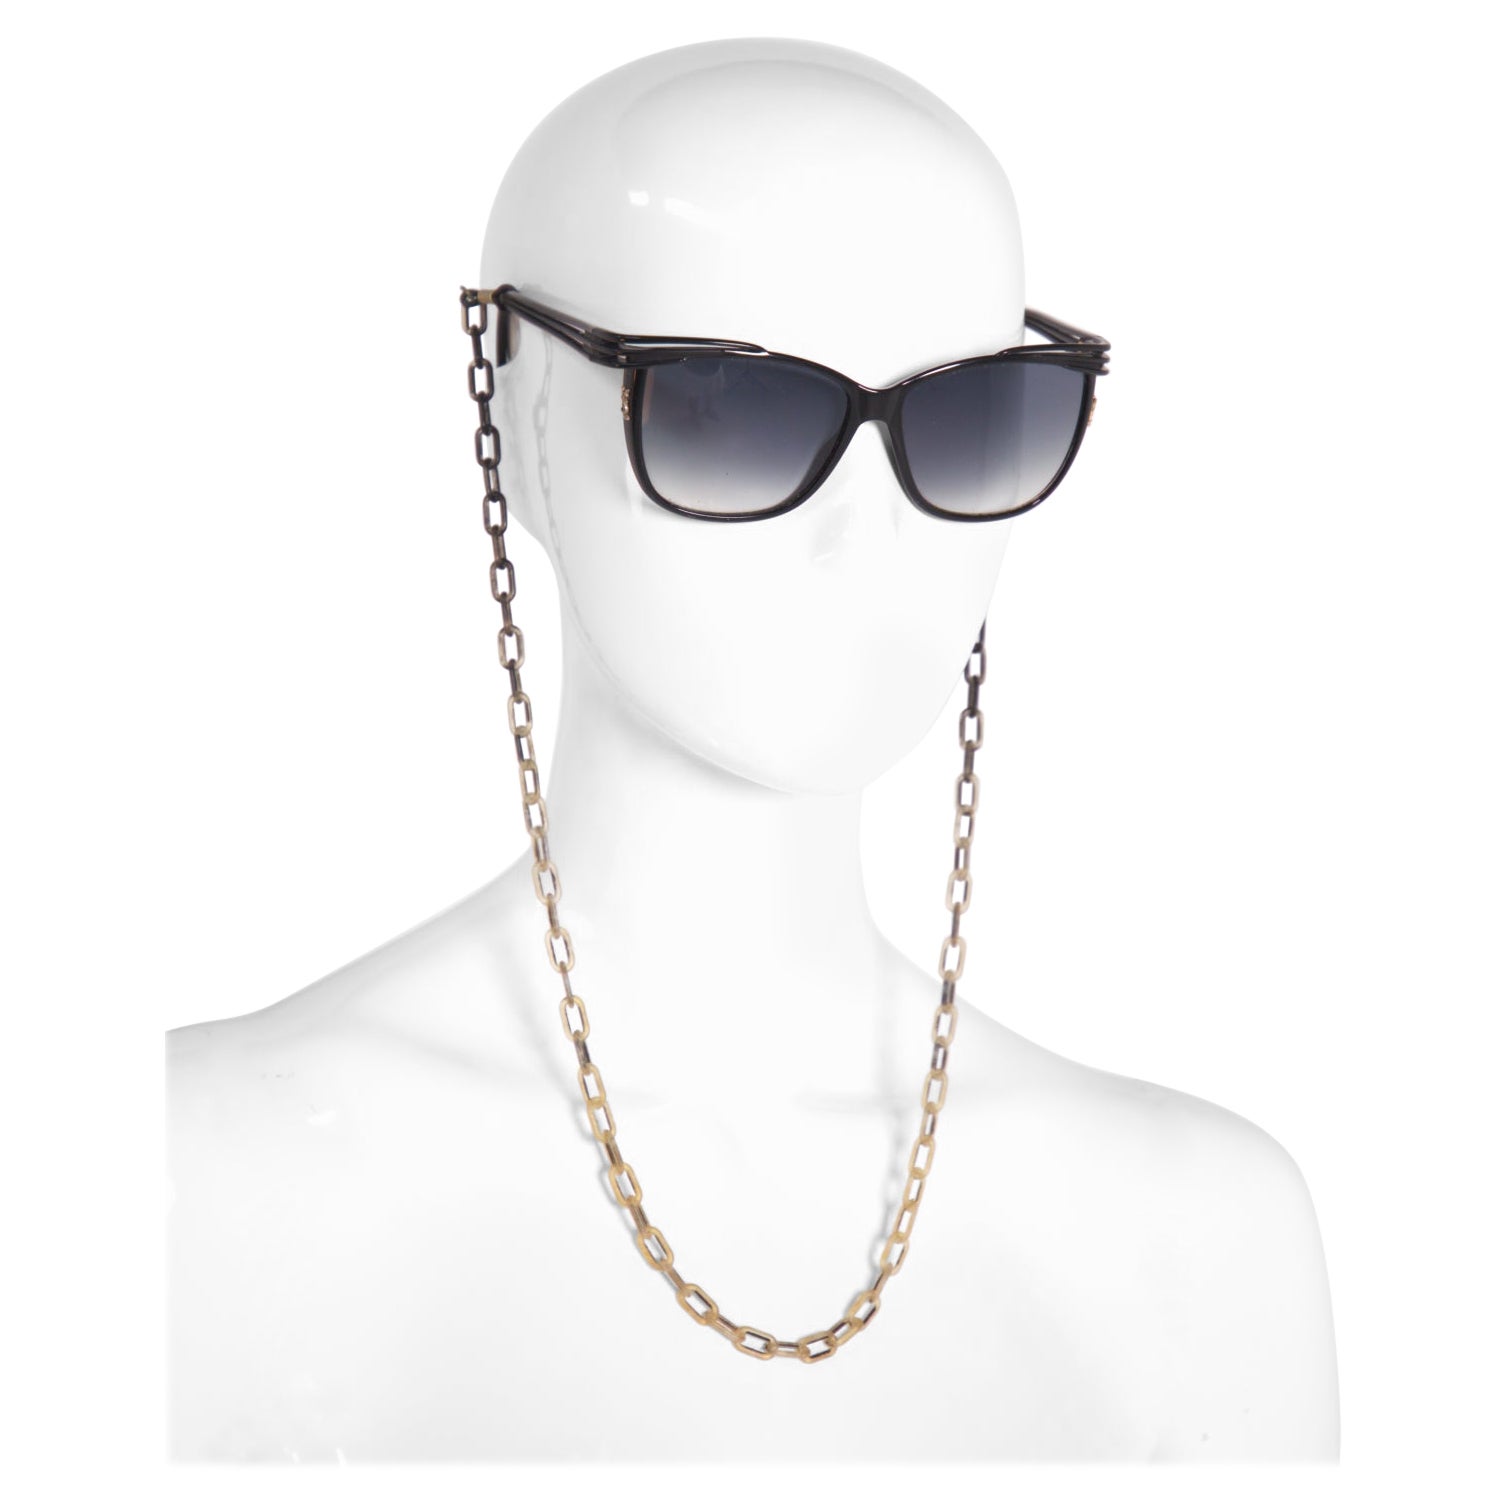 Yves Saint Laurent Vintage Chic Sunglasses